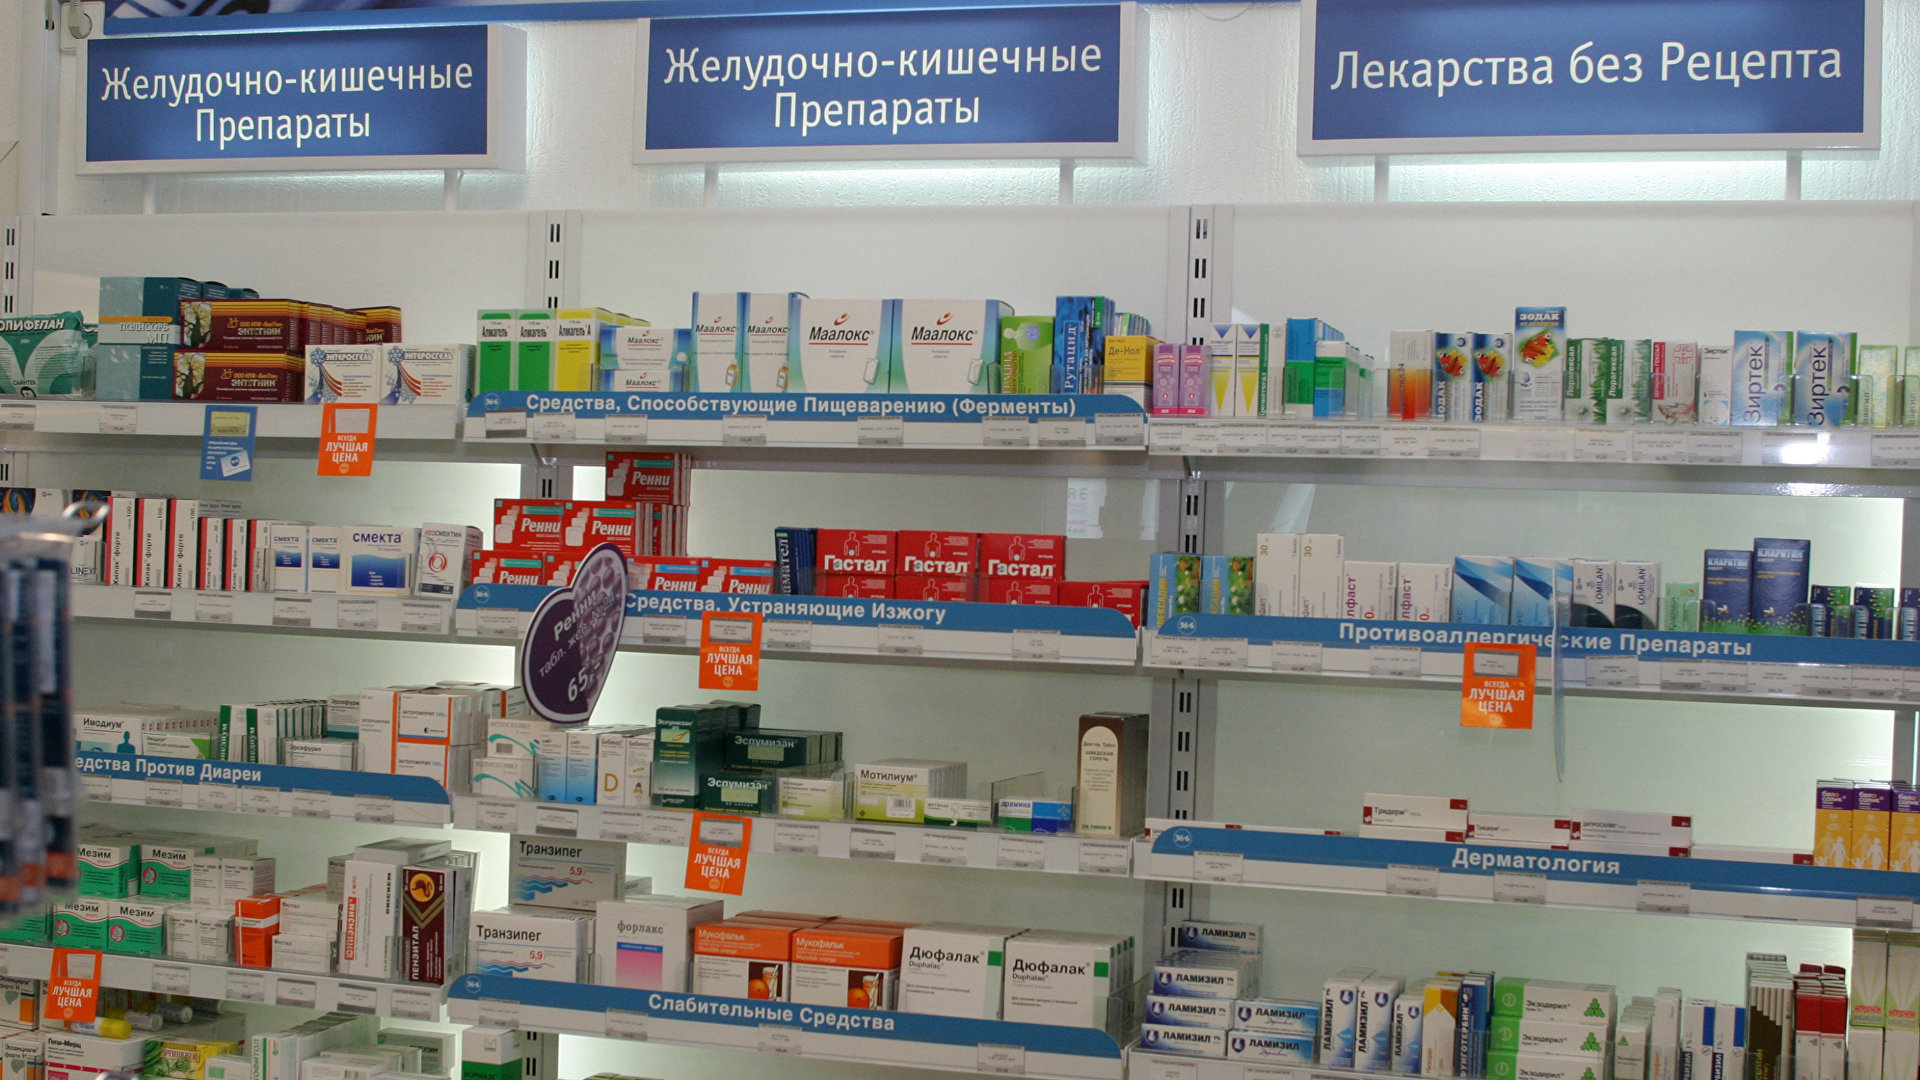 Лекарственные средства по группам в аптеке